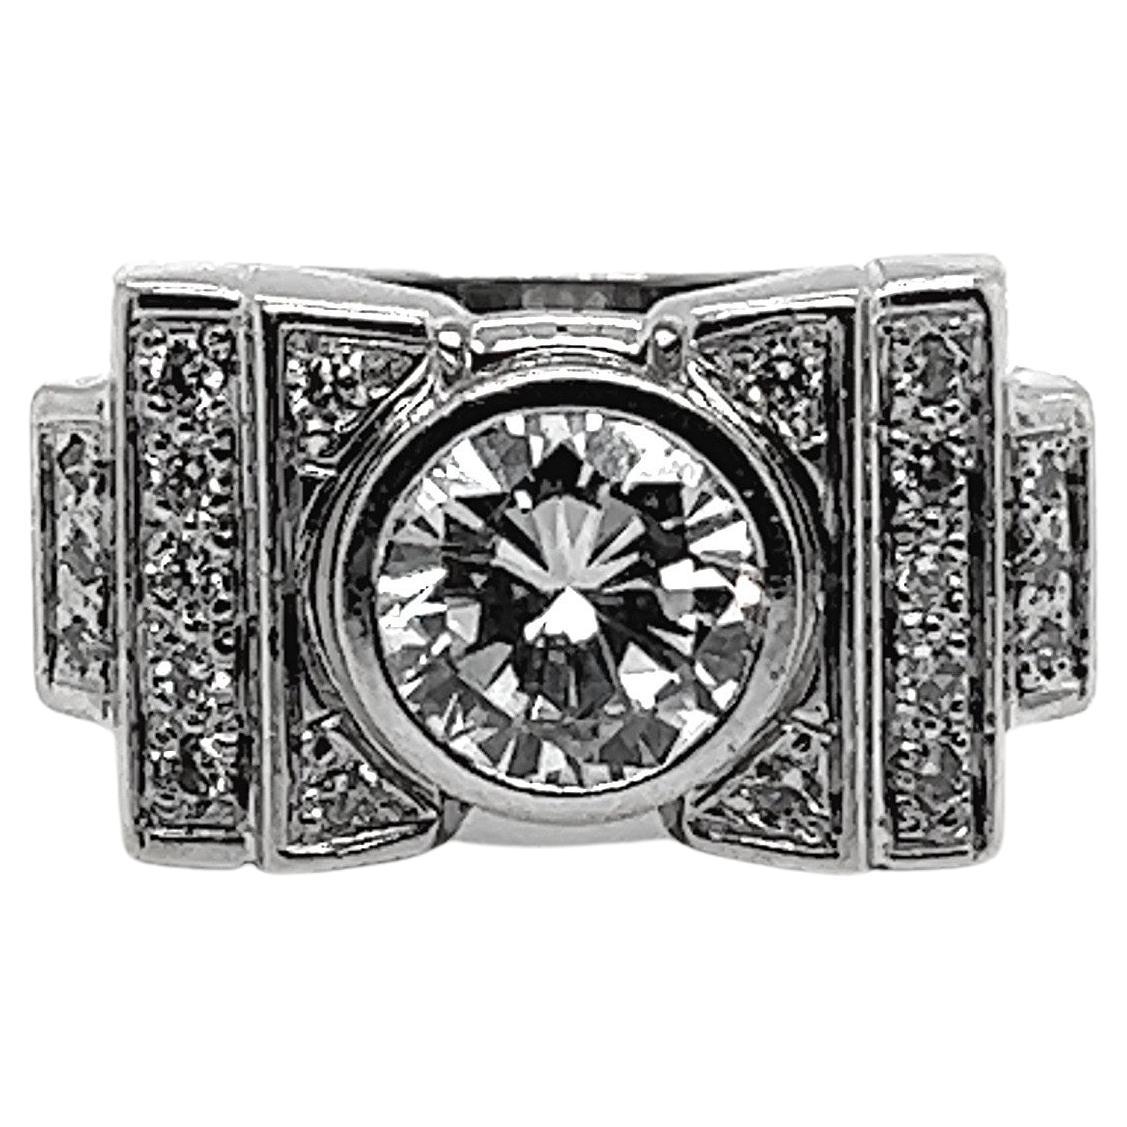 Art Deco Wedding Ring 21 diamonds 2.5 Karat 18 Karat White Gold